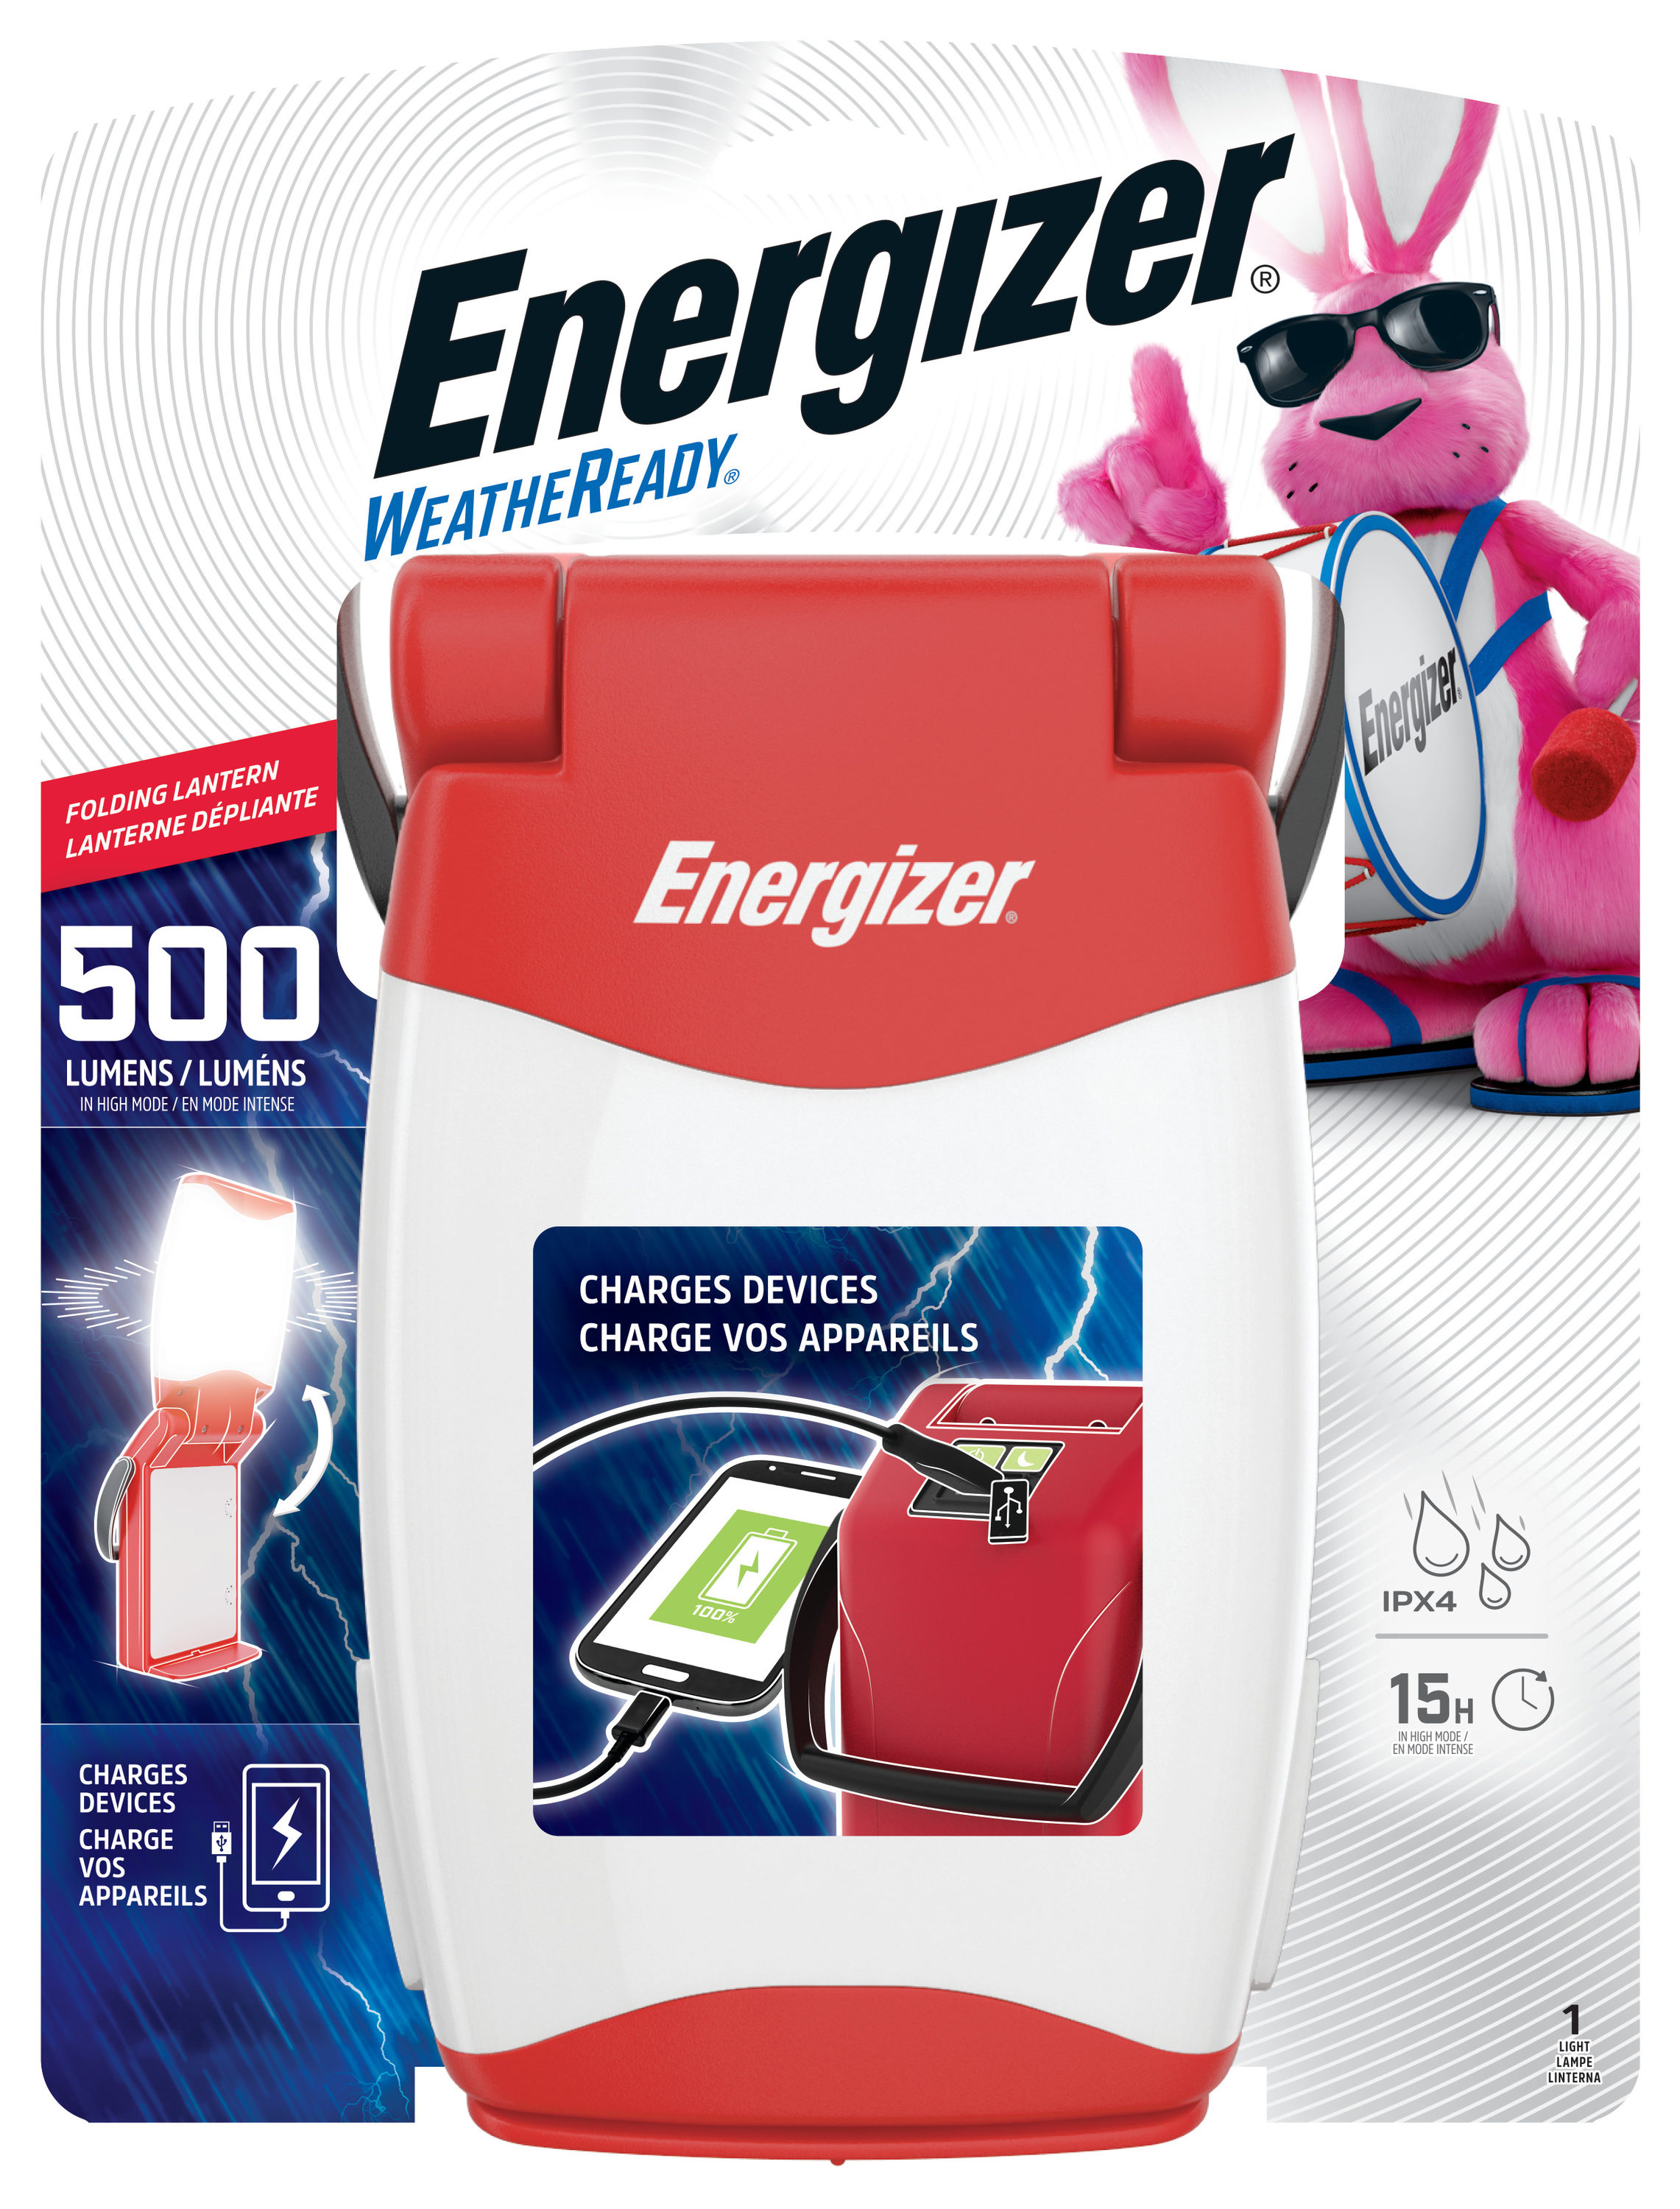 Energizer Weather Ready Lantern, LED Folding